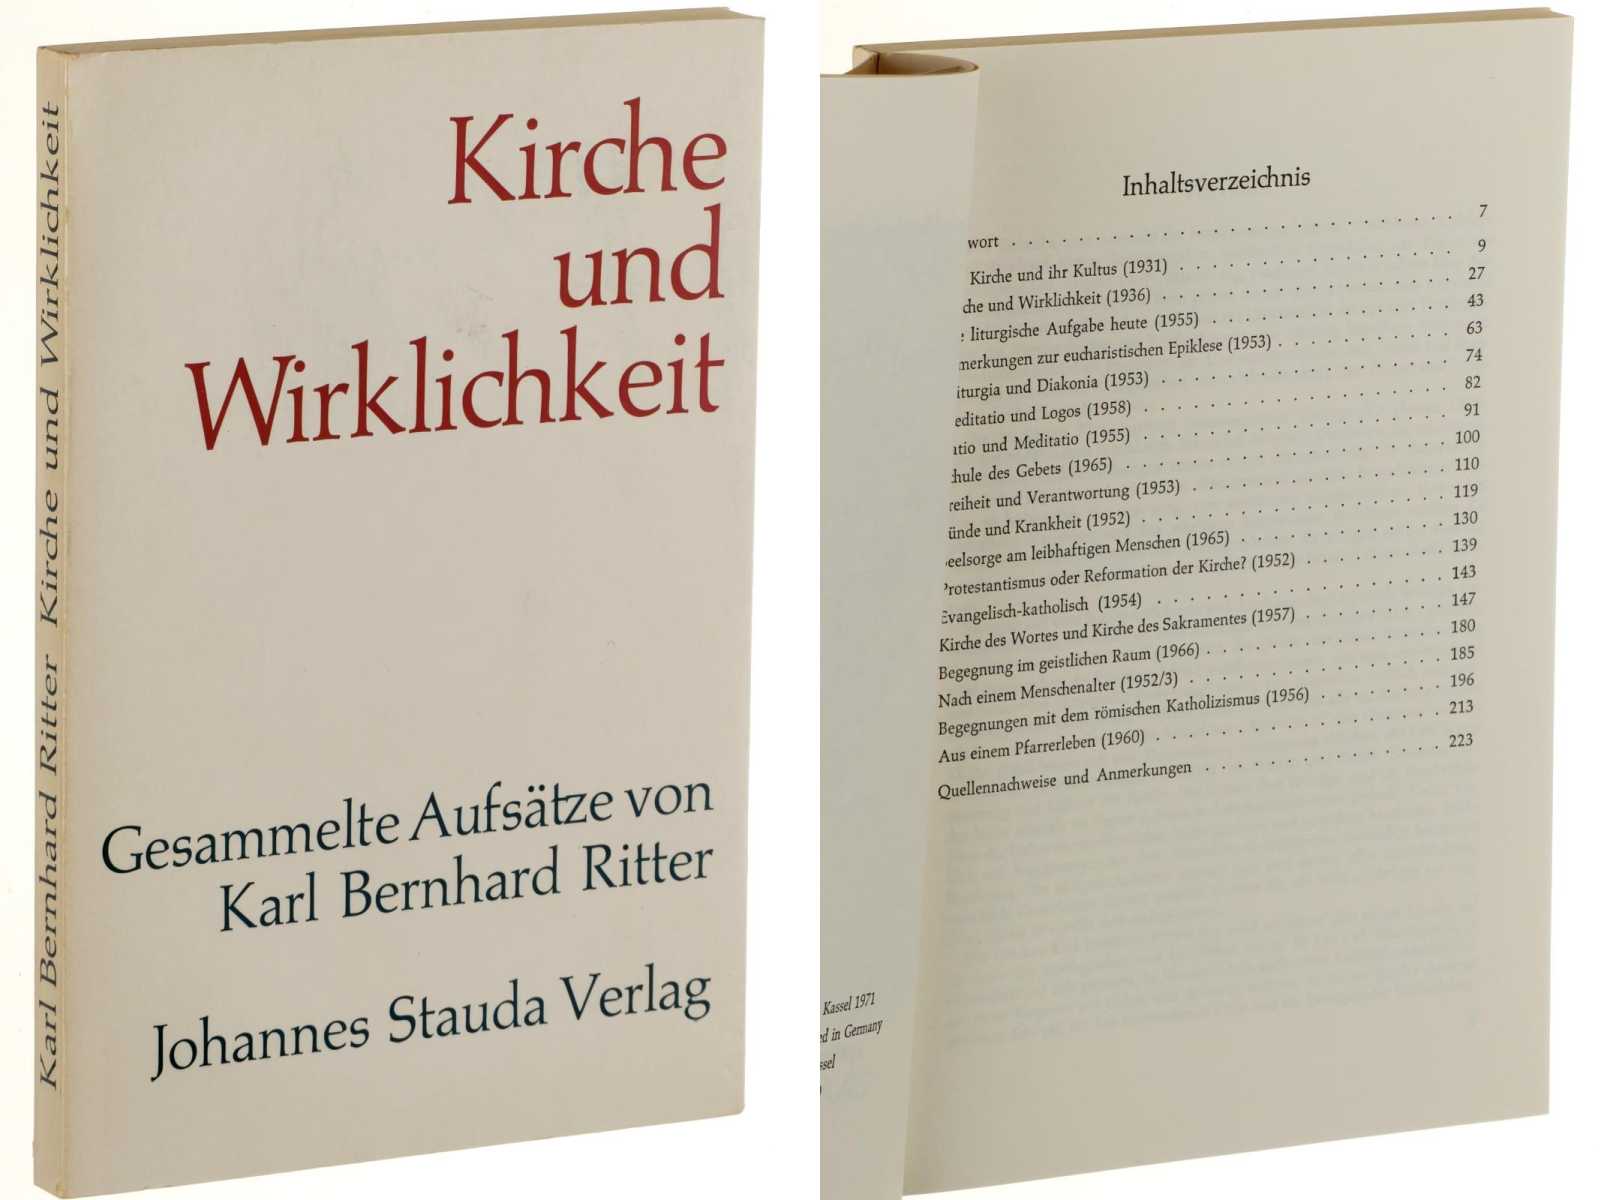 Ritter, Karl Bernhard:  Kirche und Wirklichkeit. Gesammelte Aufsätze. Hrsg. von Christian Zippert. 